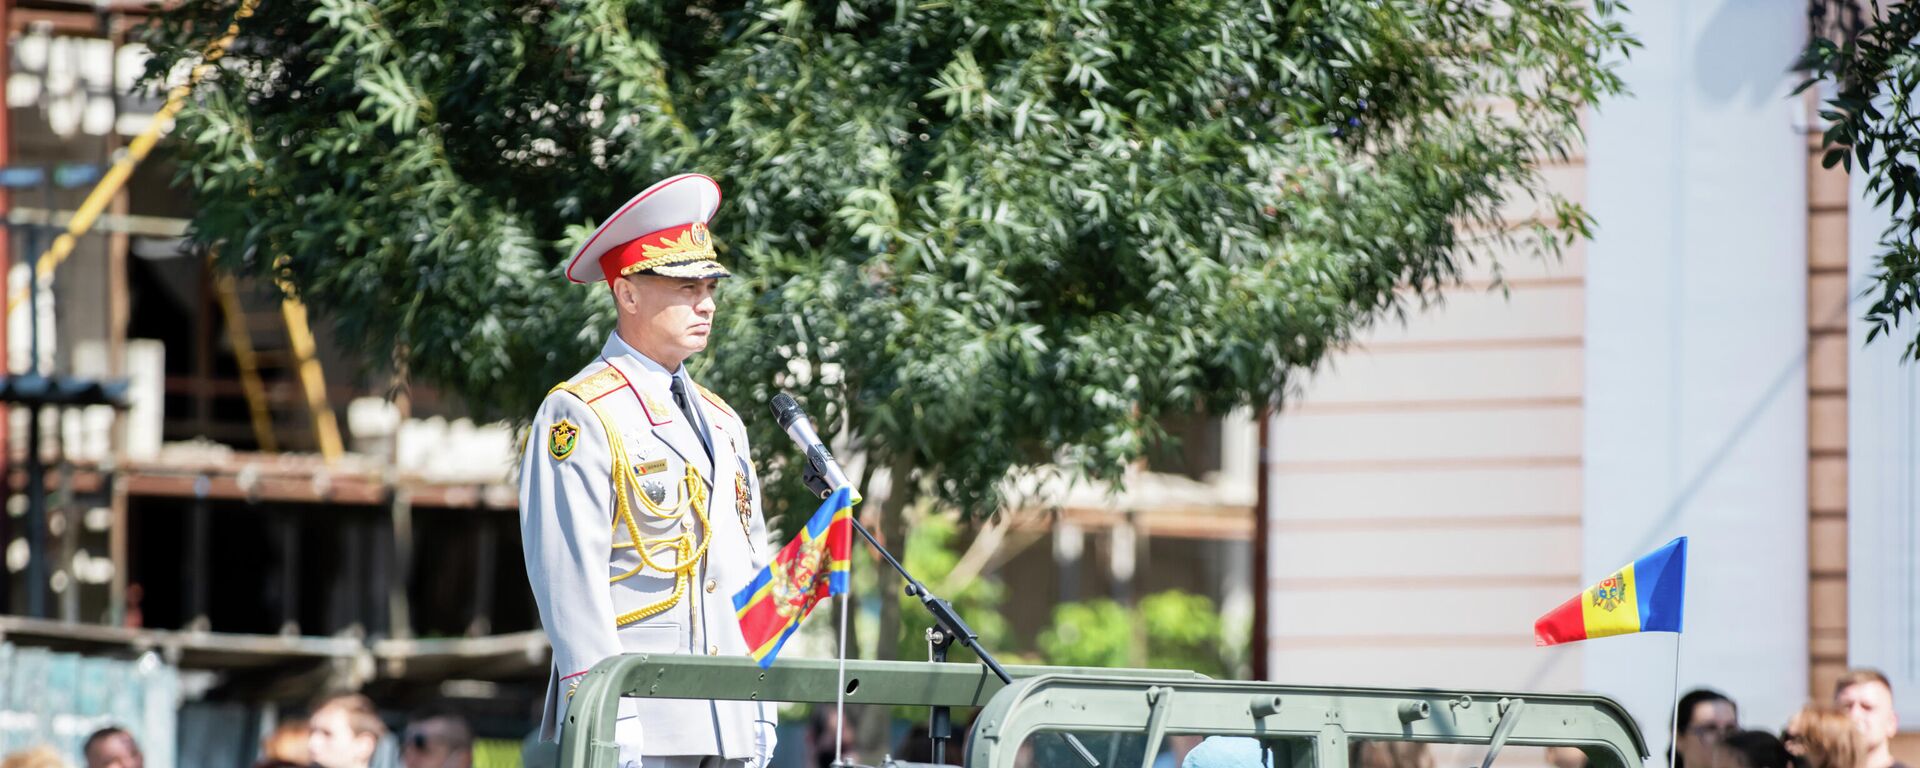 Военный парад в Кишиневе по случаю 30-летия независимости Молдовы 2021 - Sputnik Молдова, 1920, 08.09.2021